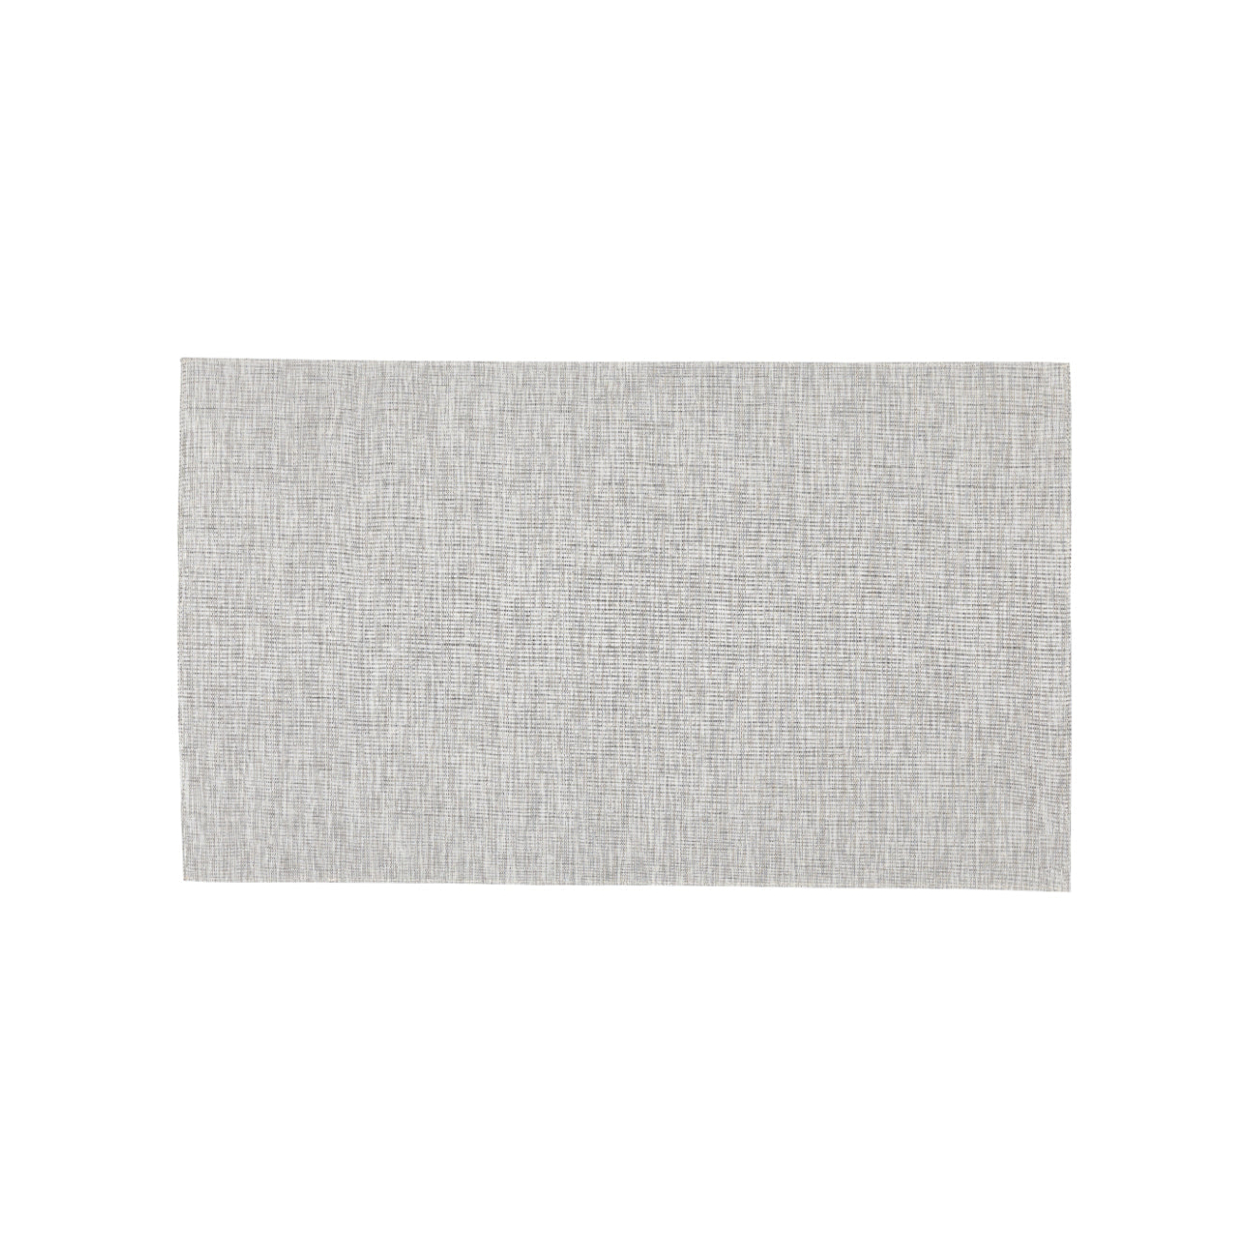 Indoor Outdoor Mat, Light Grey, 5' x 8'